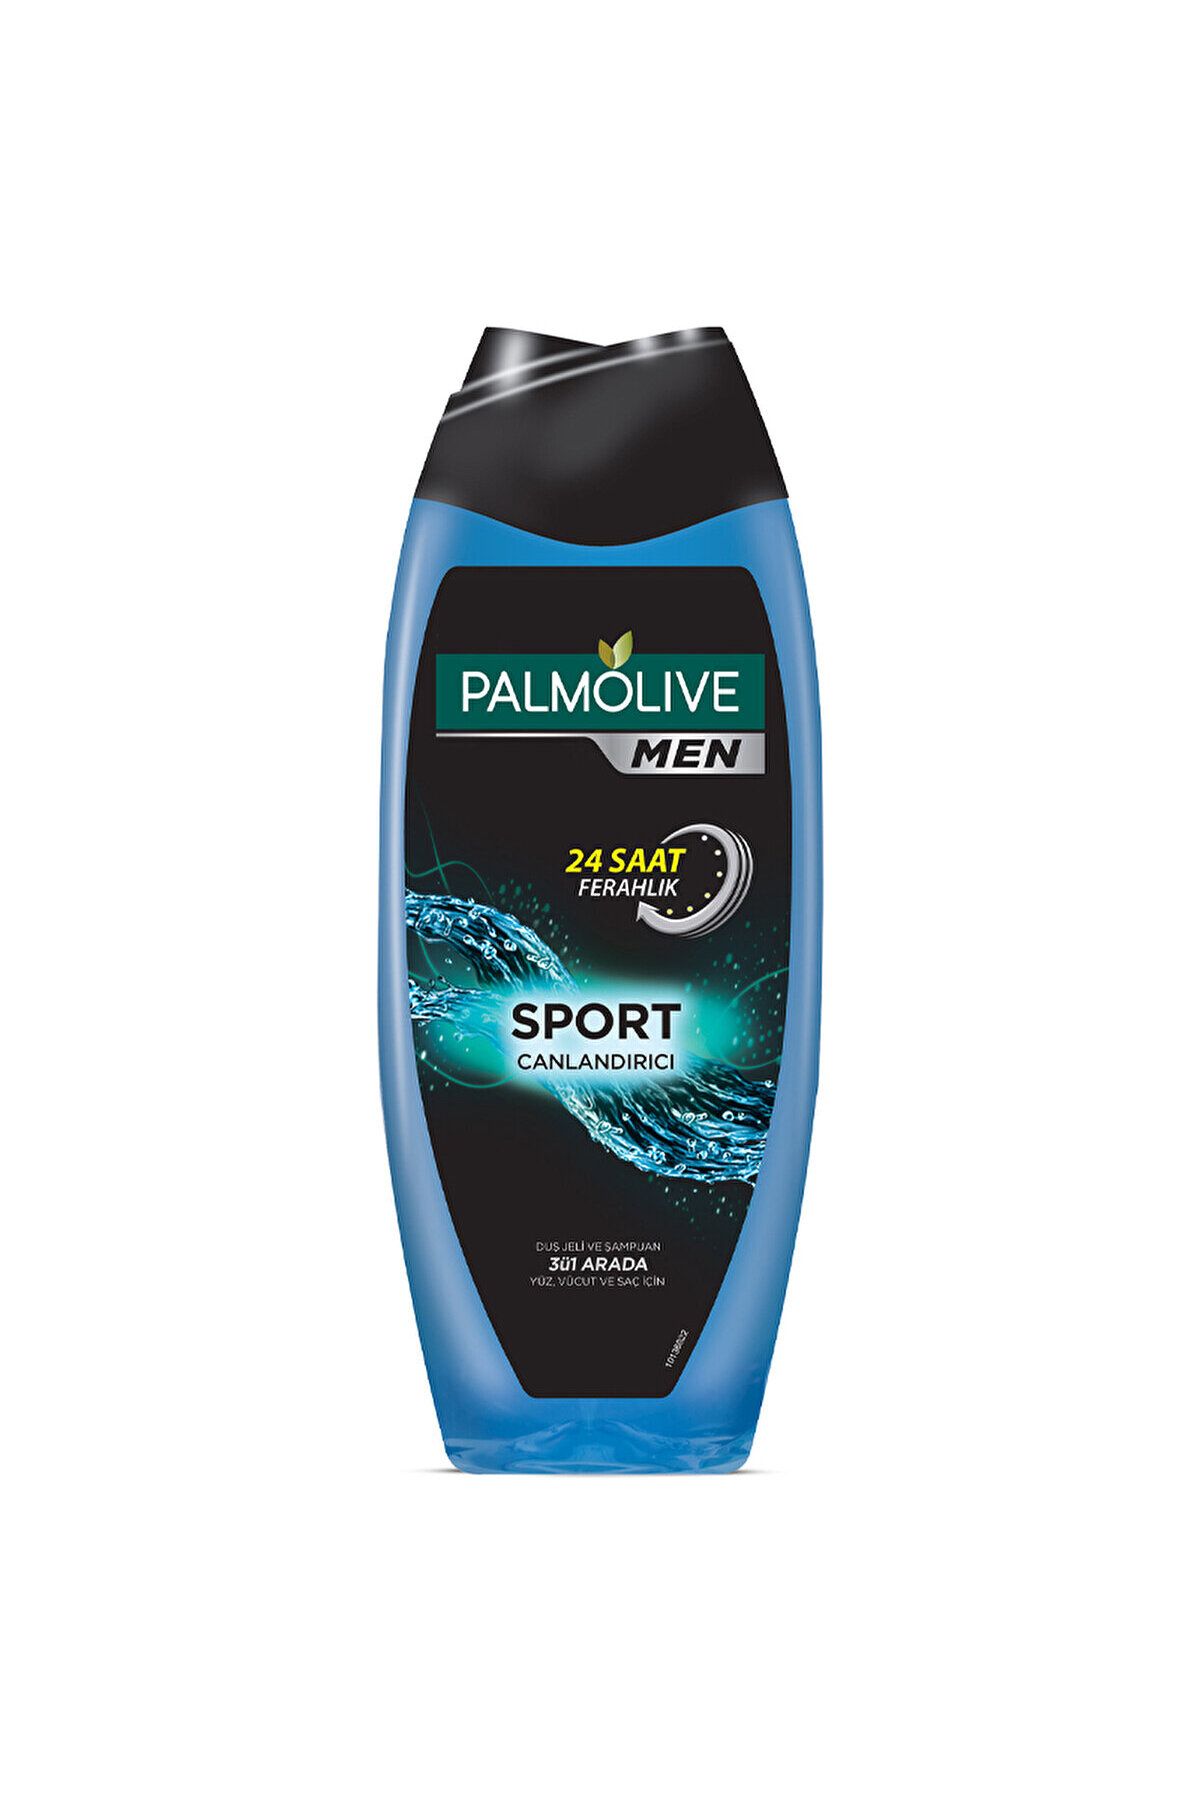 Palmolive Men Sport 3'ü 1 Arada Yüz, Vücut ve Saç için Duş Jeli ve Şampuan 500 ml